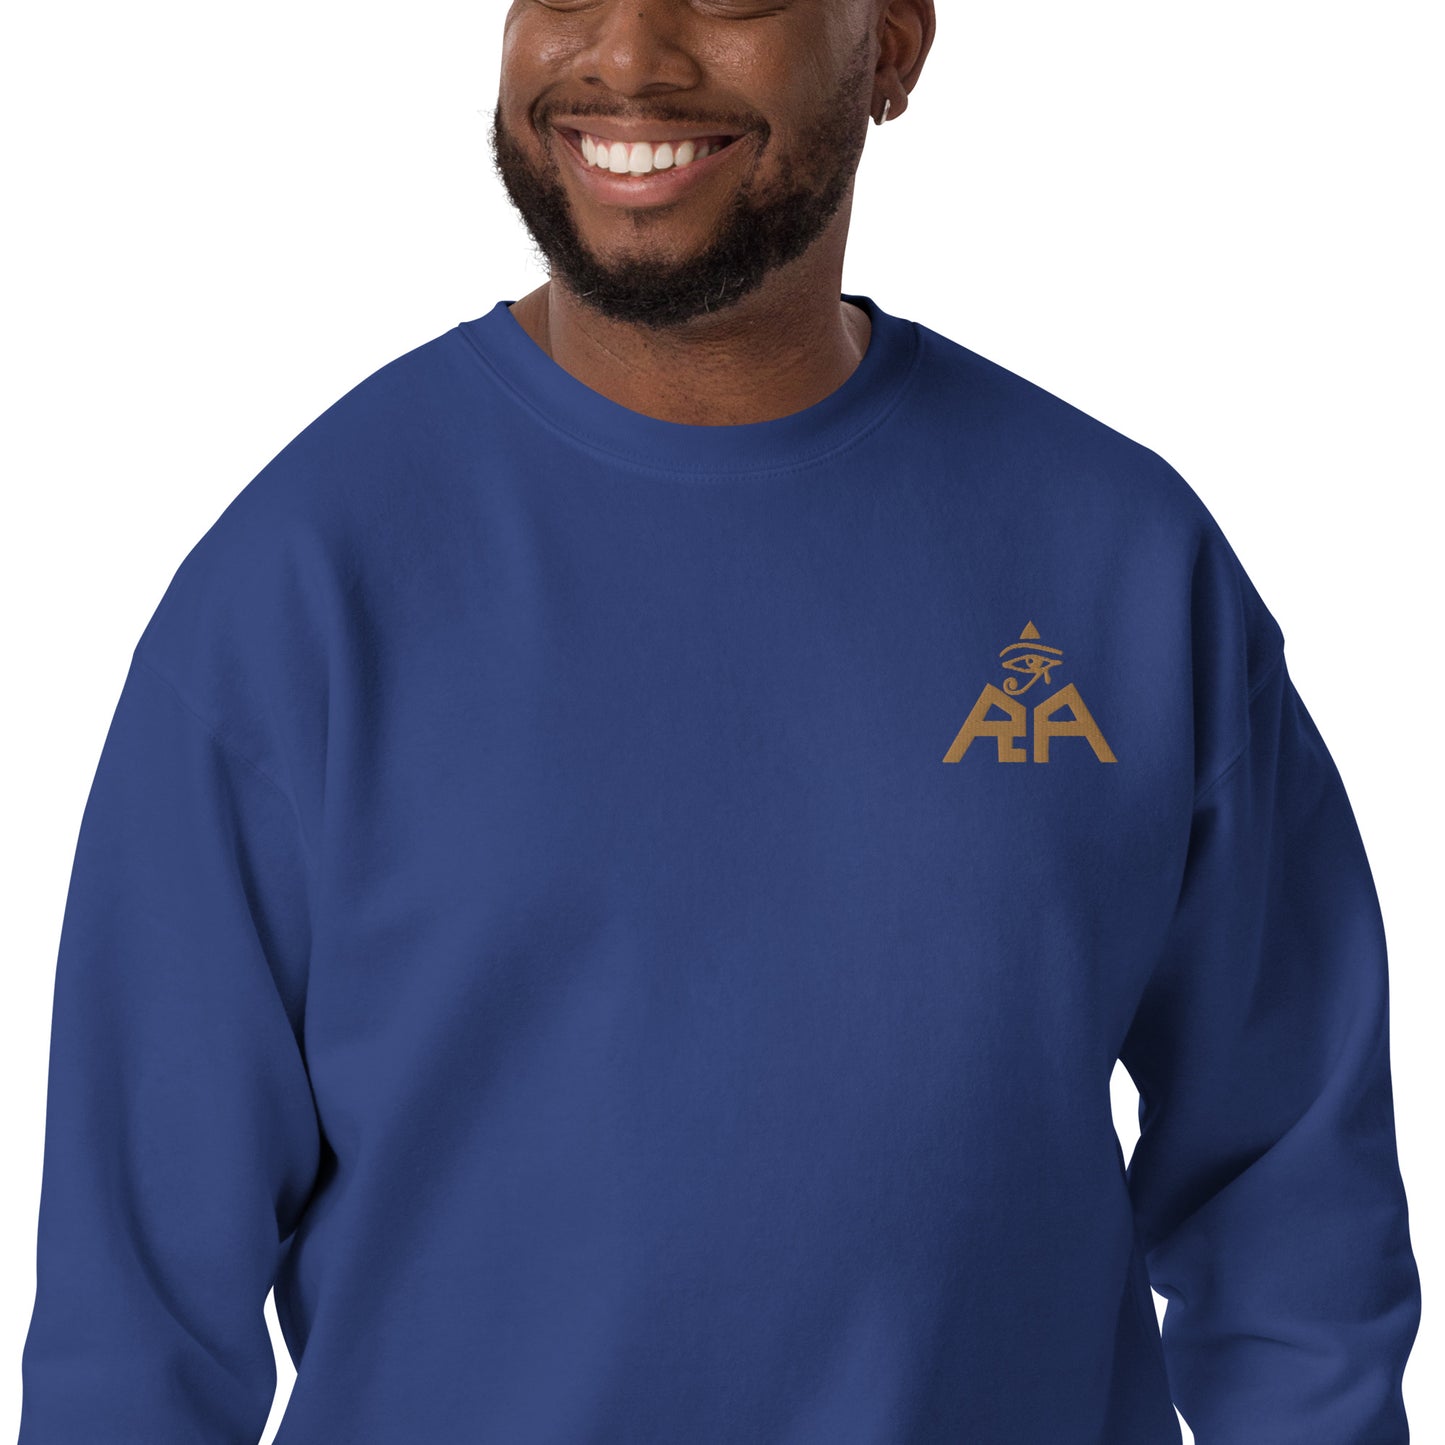 Unisex RA Brand Premium Sweatshirt